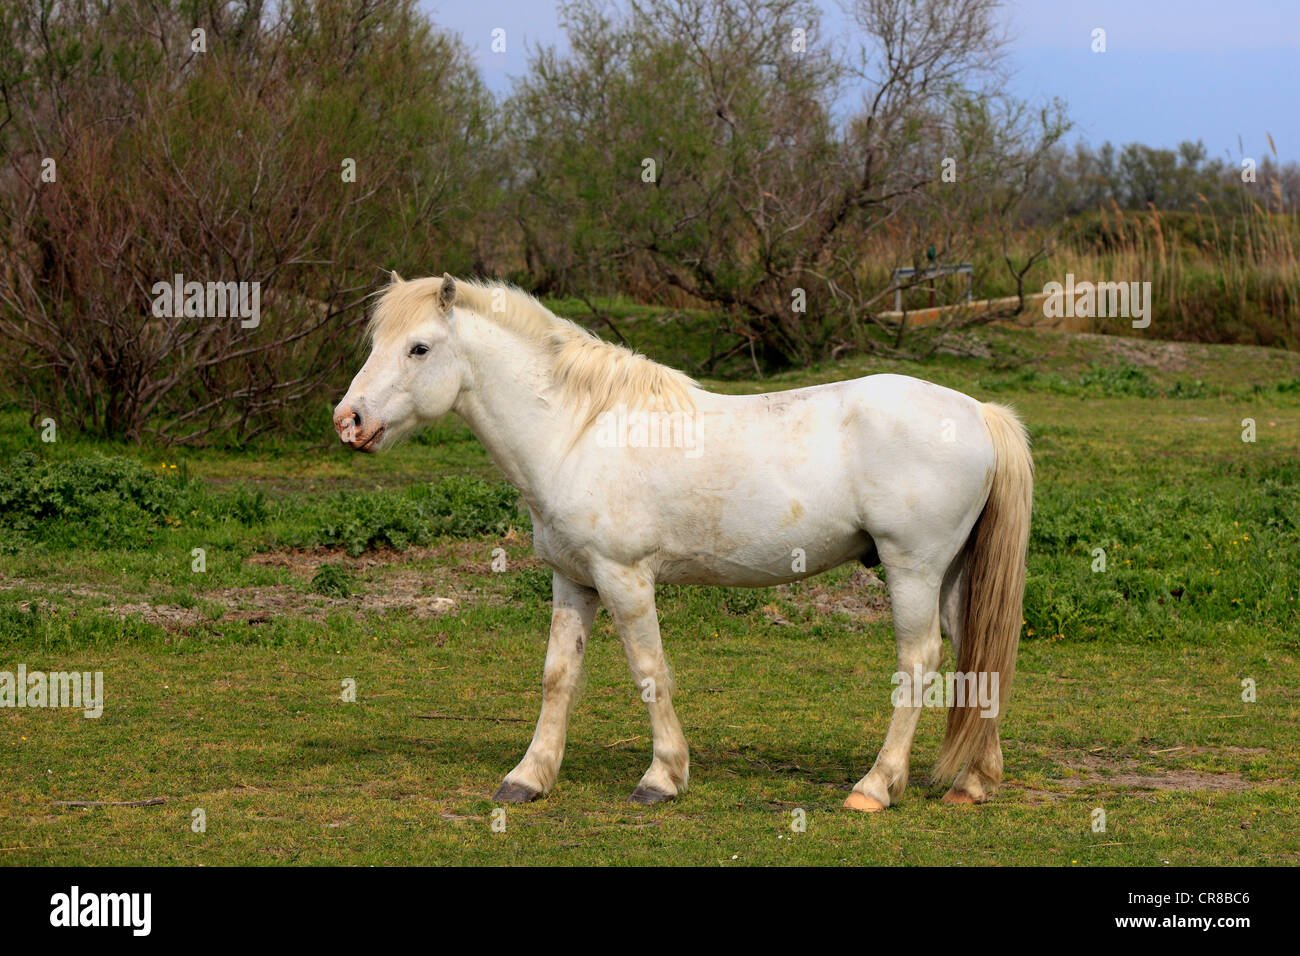 Cheval de Camargue (Equus caballus), mare, Saintes Maries-de-la-Mer, Camargue, France, Europe Banque D'Images